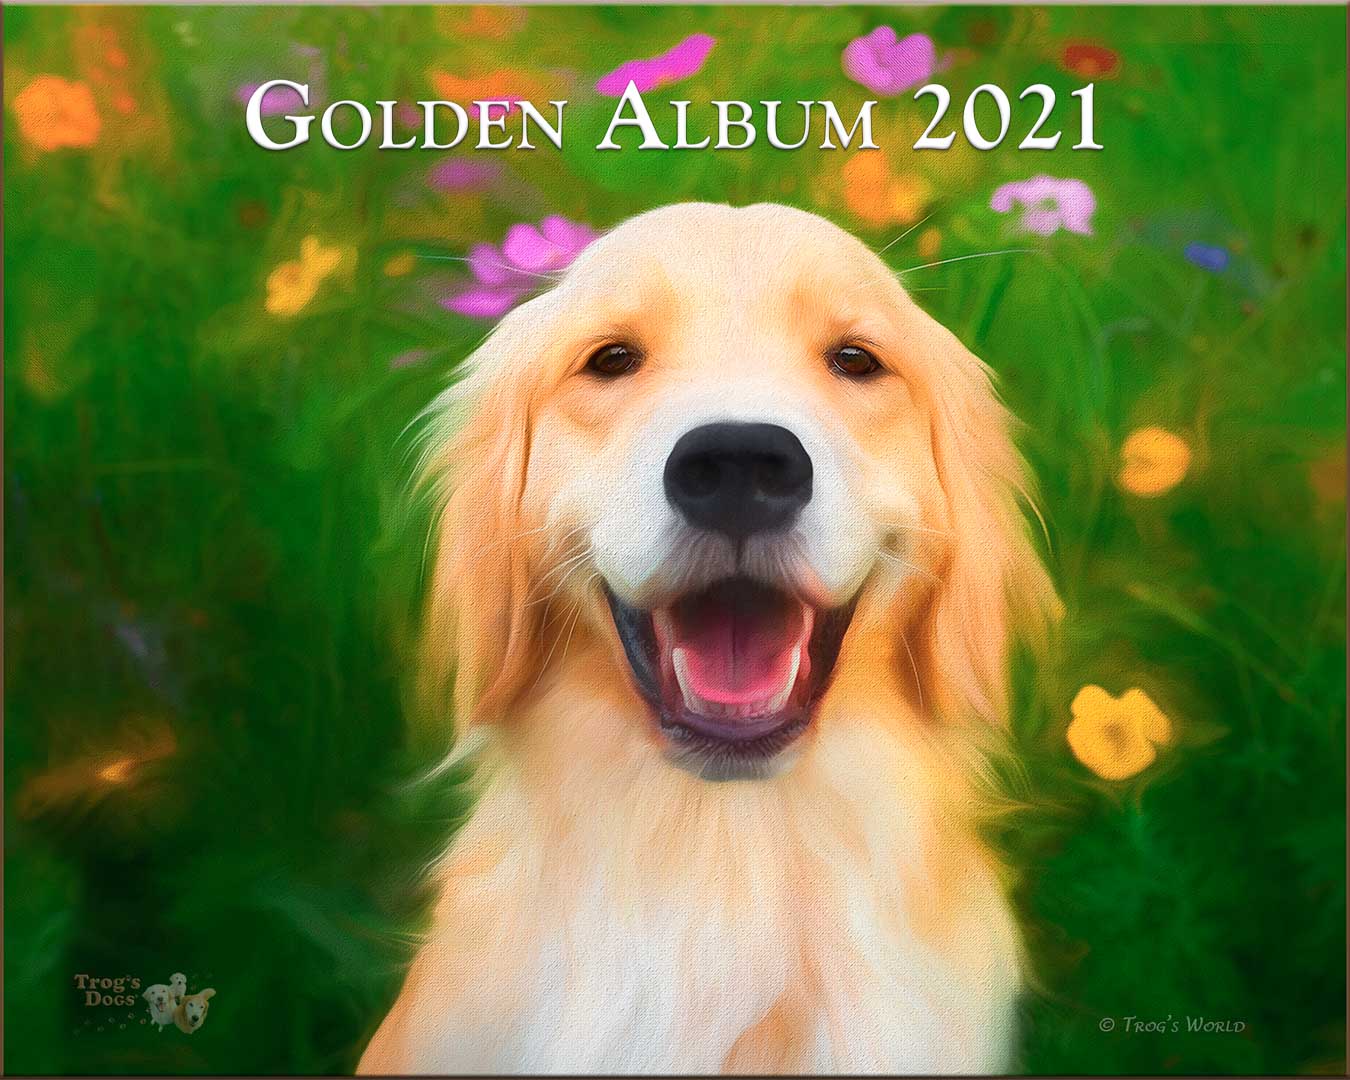 Golden Retriever Puppy smiling